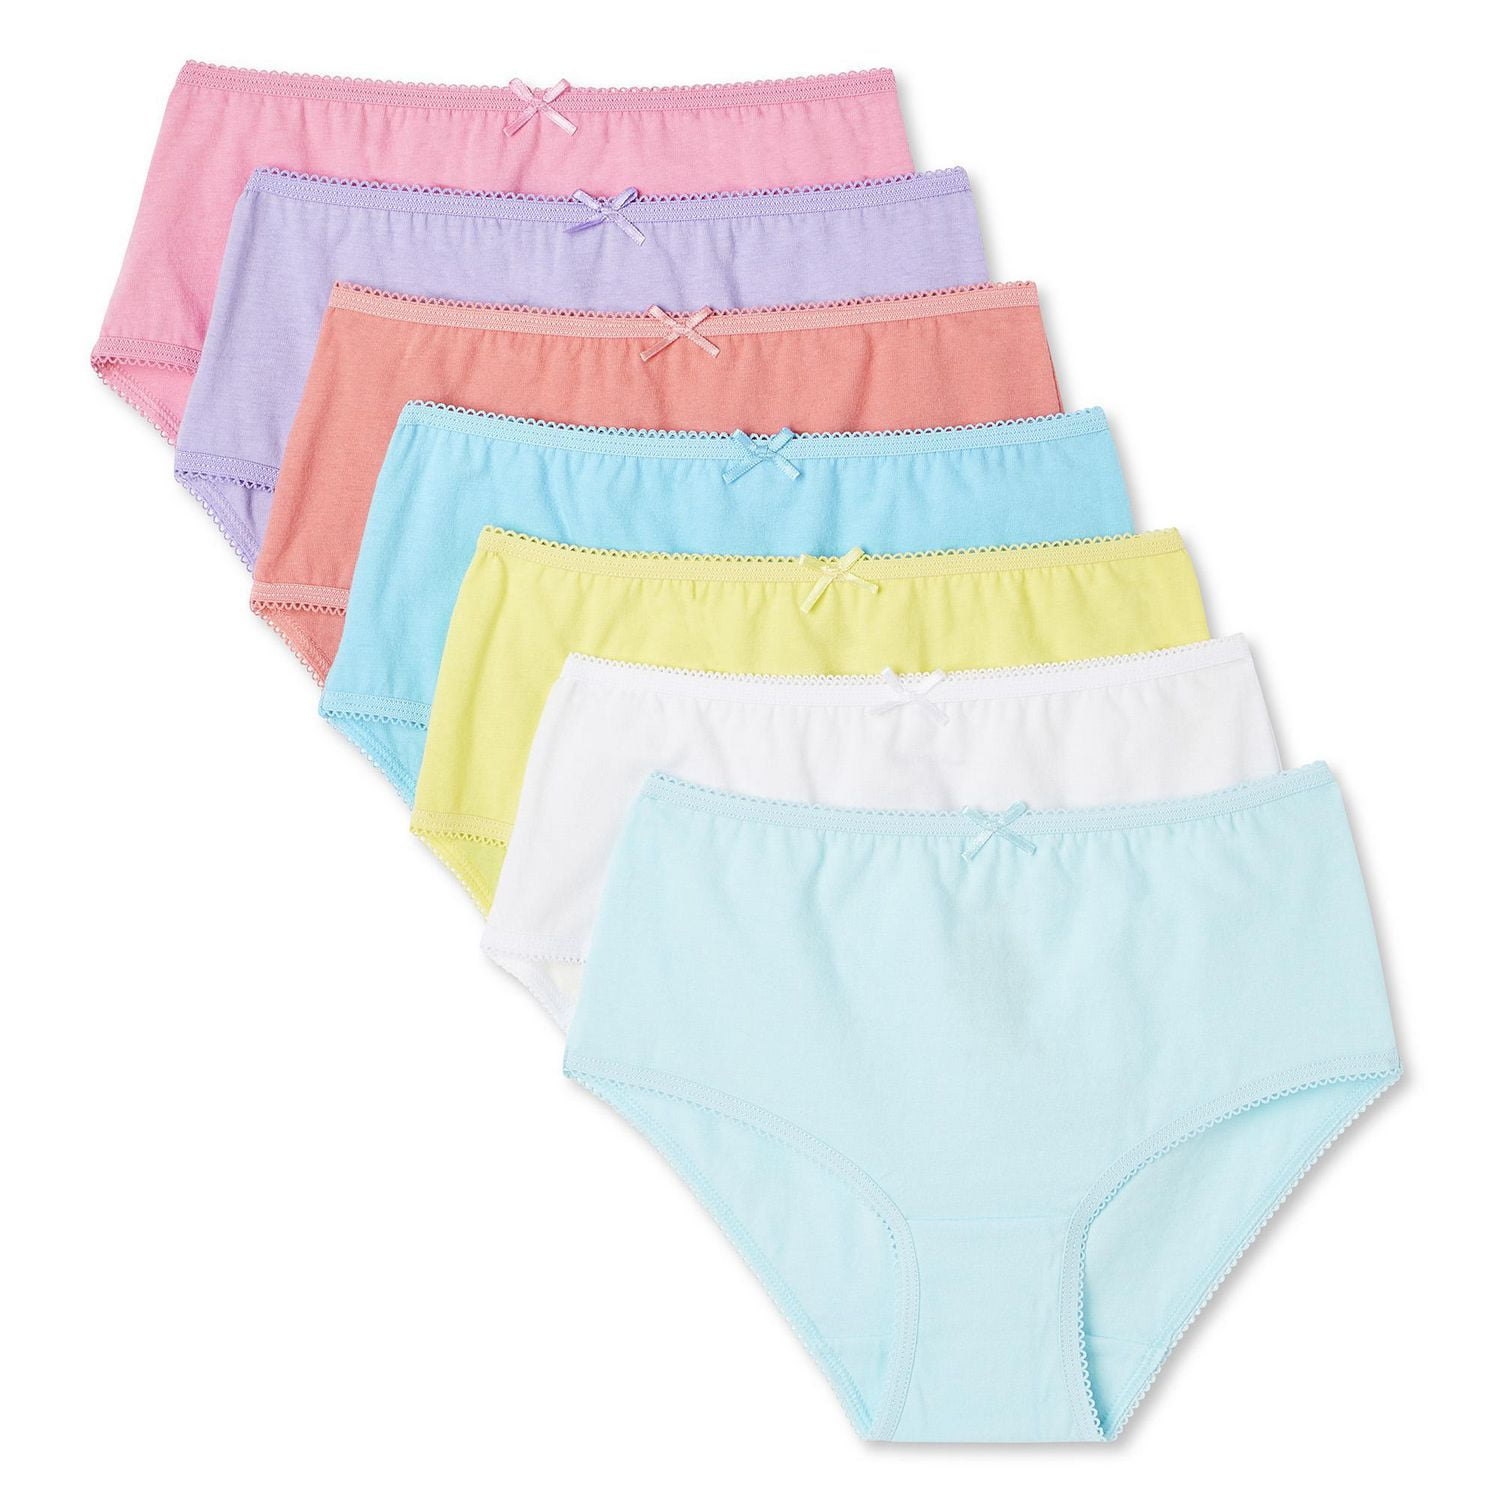 Brief, Women's Underwear, Starting at $9